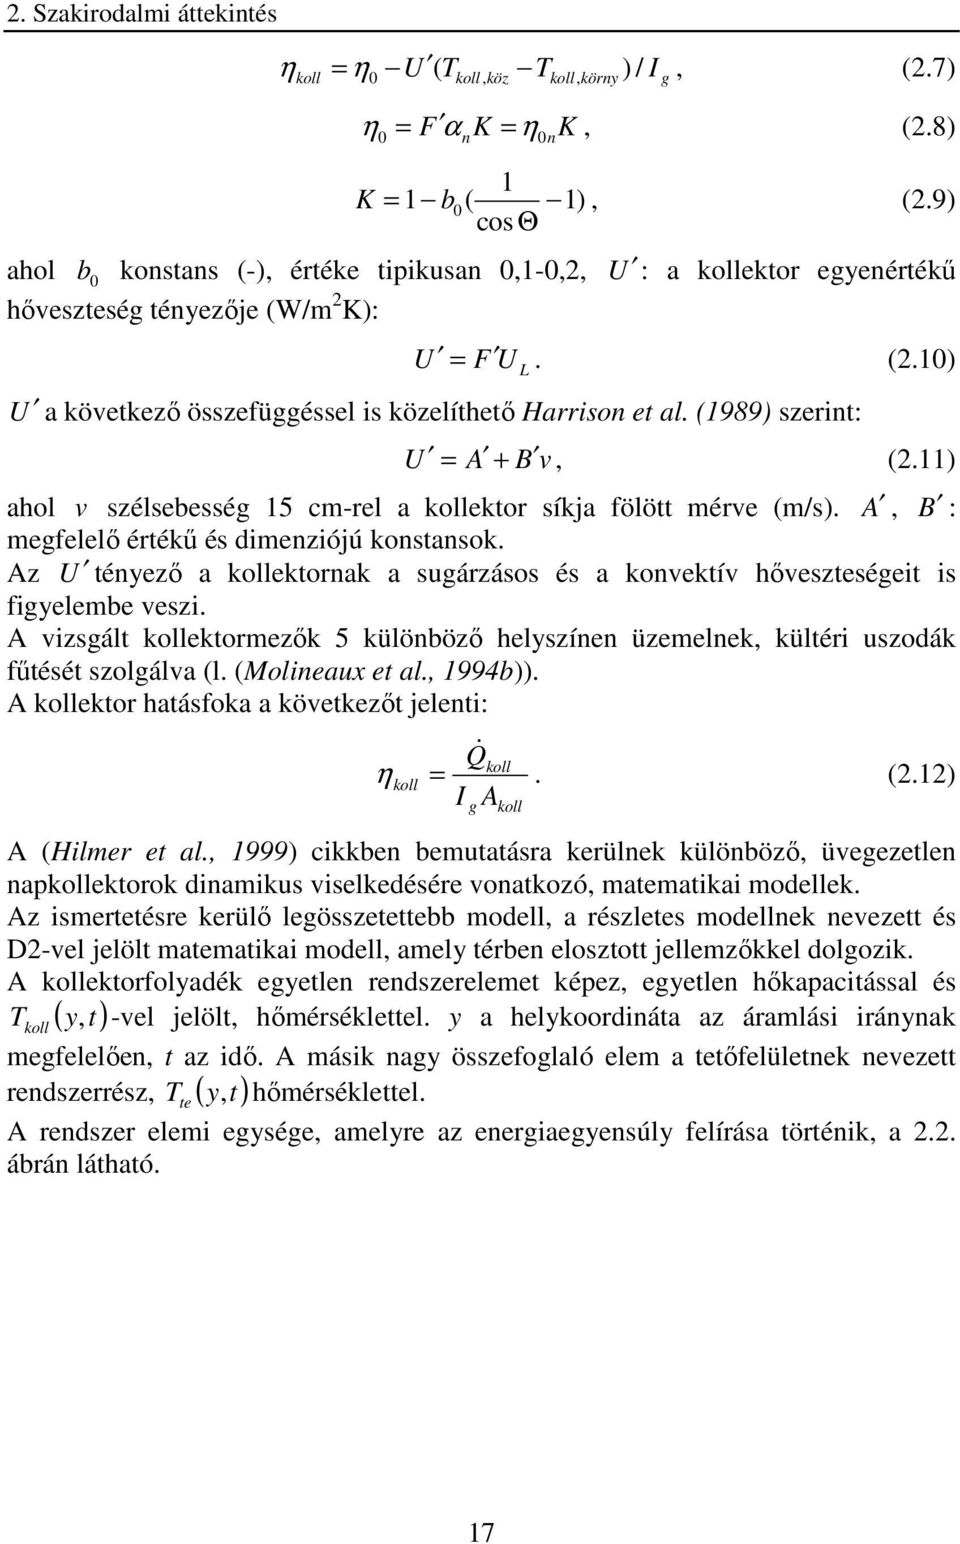 (1989) szerin: U = A + B v, (2.11) ahol v szélsebesség 15 c-rel a ekor síkja fölö érve (/s). A, B : egfelelı érékő és dienziójú konsansok.